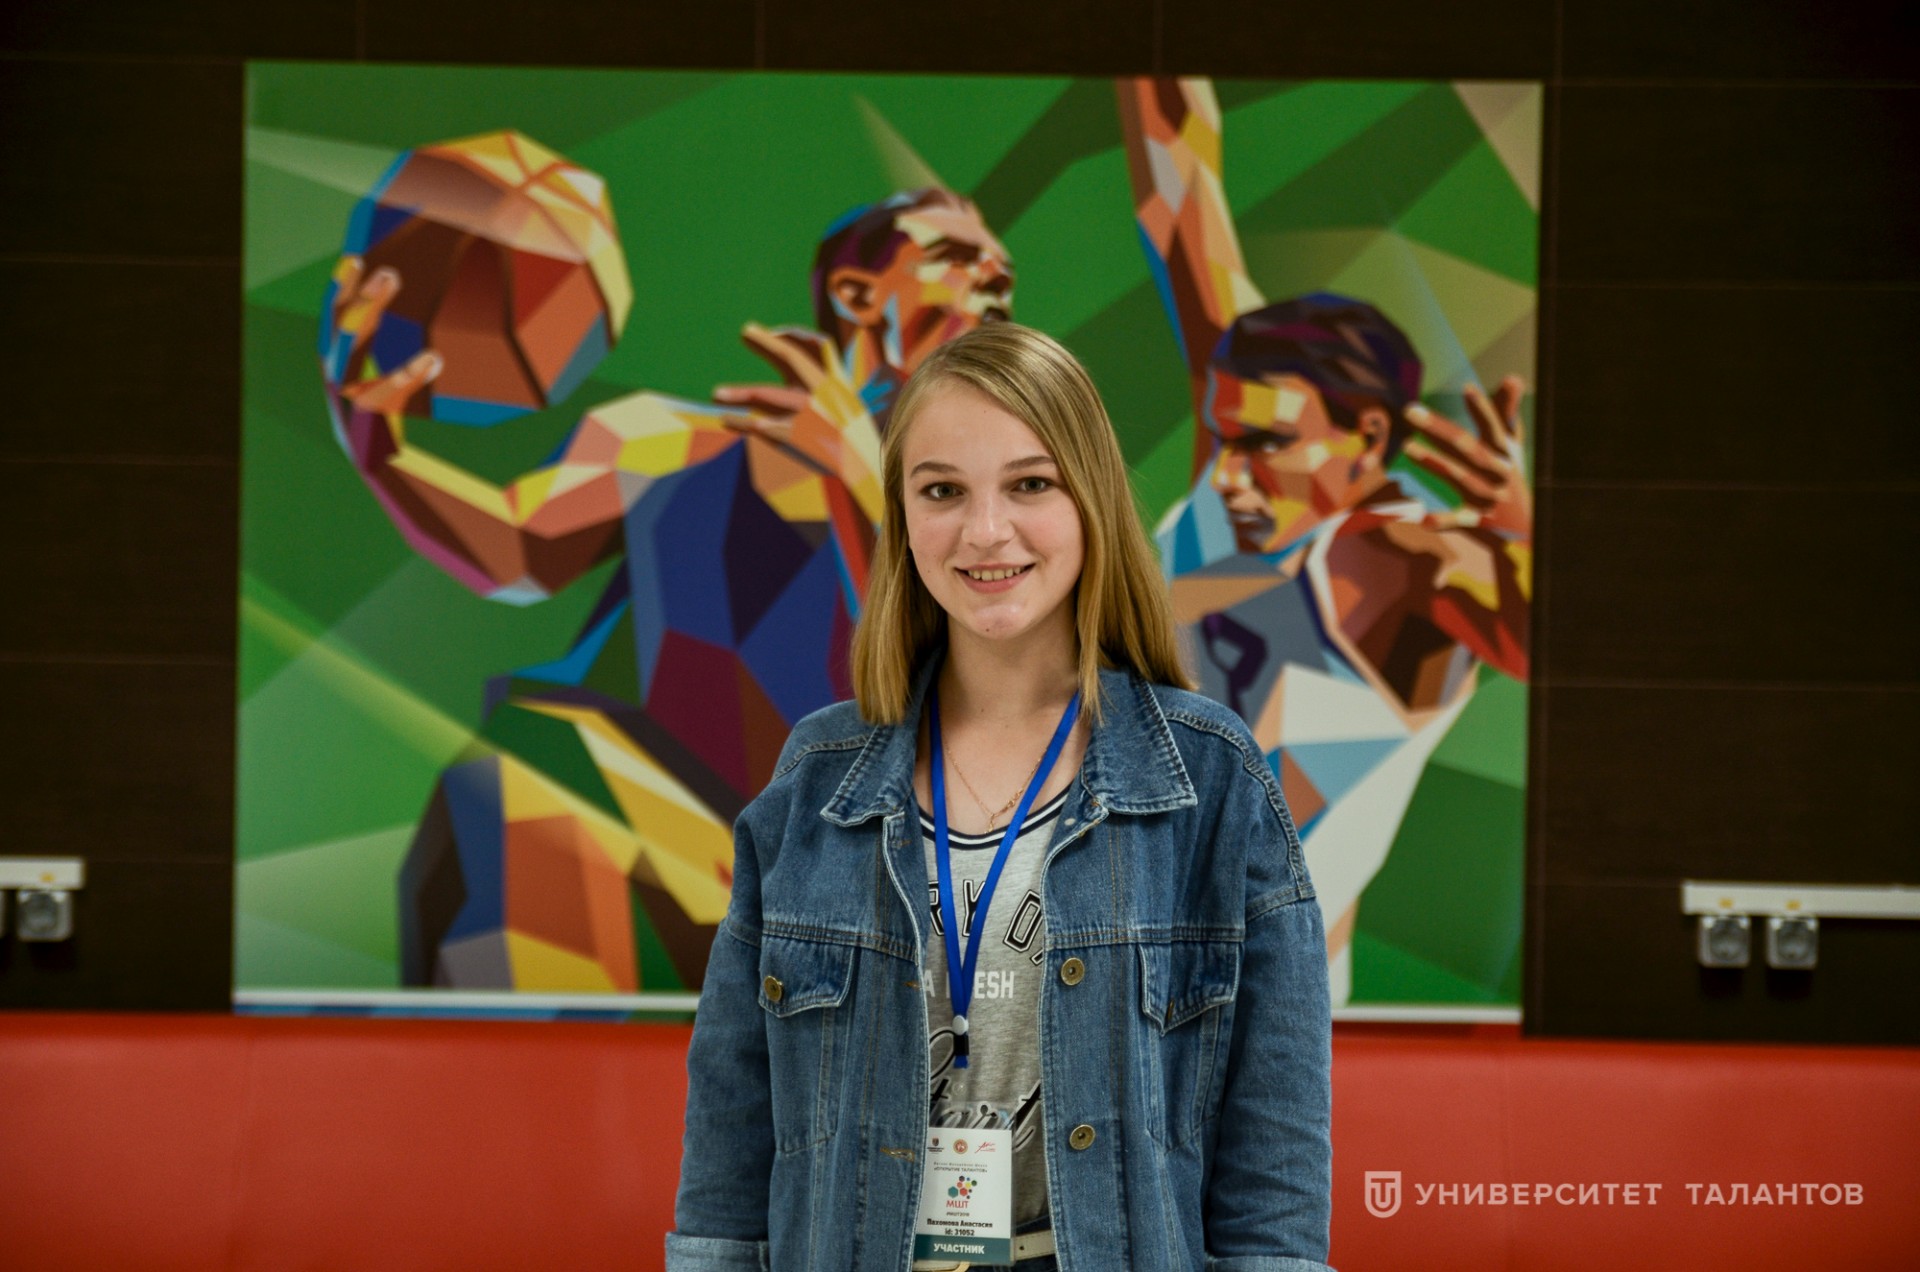 Анастасия Пахомова, ученица 10 класса: «Для меня лучший отдых – это смена деятельности»